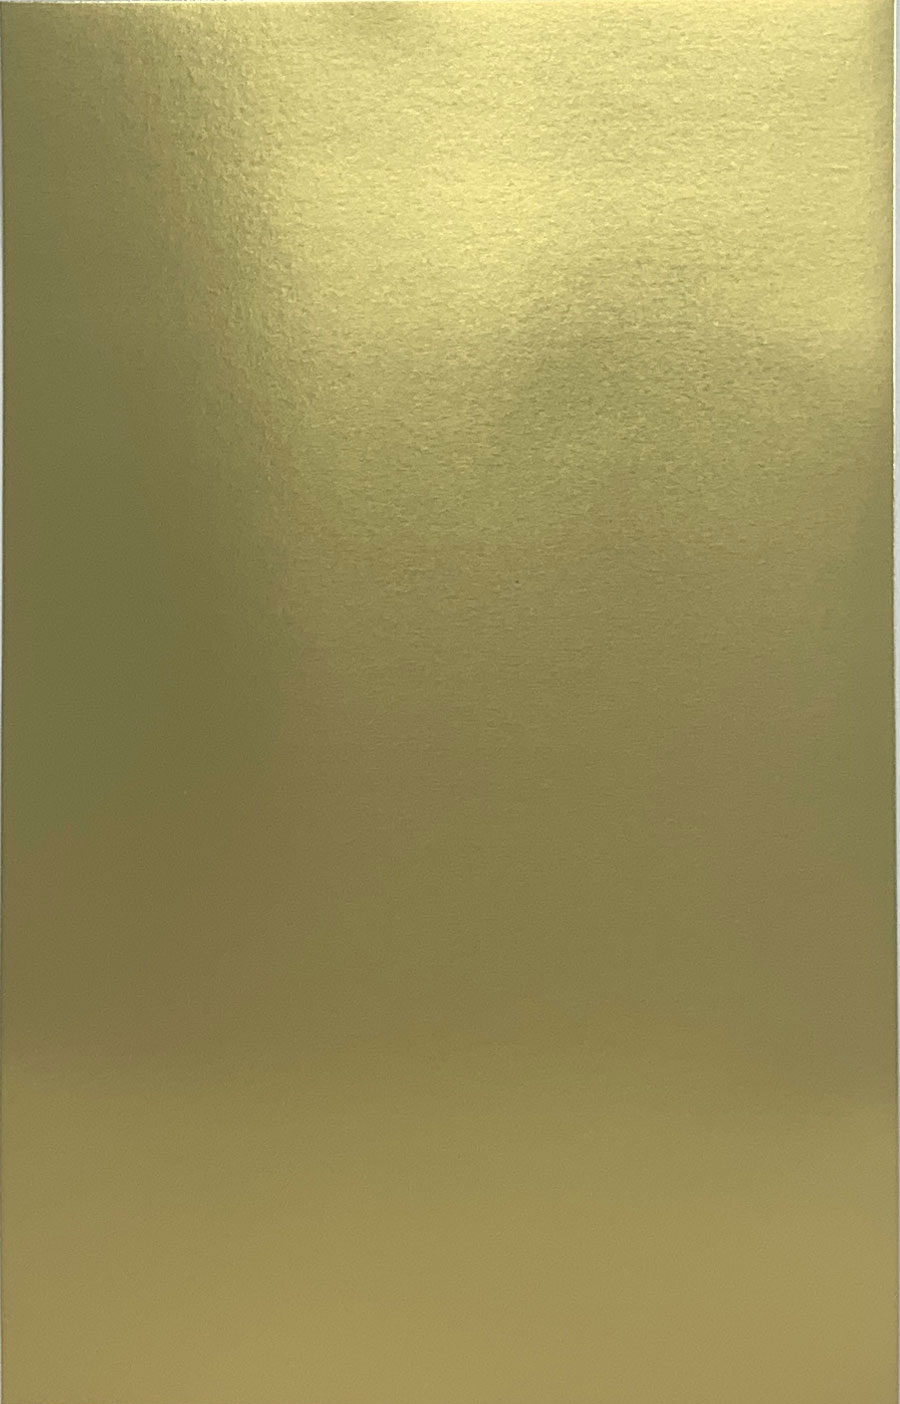 Gold Metallic Cardstock Sheet, 7""x11"